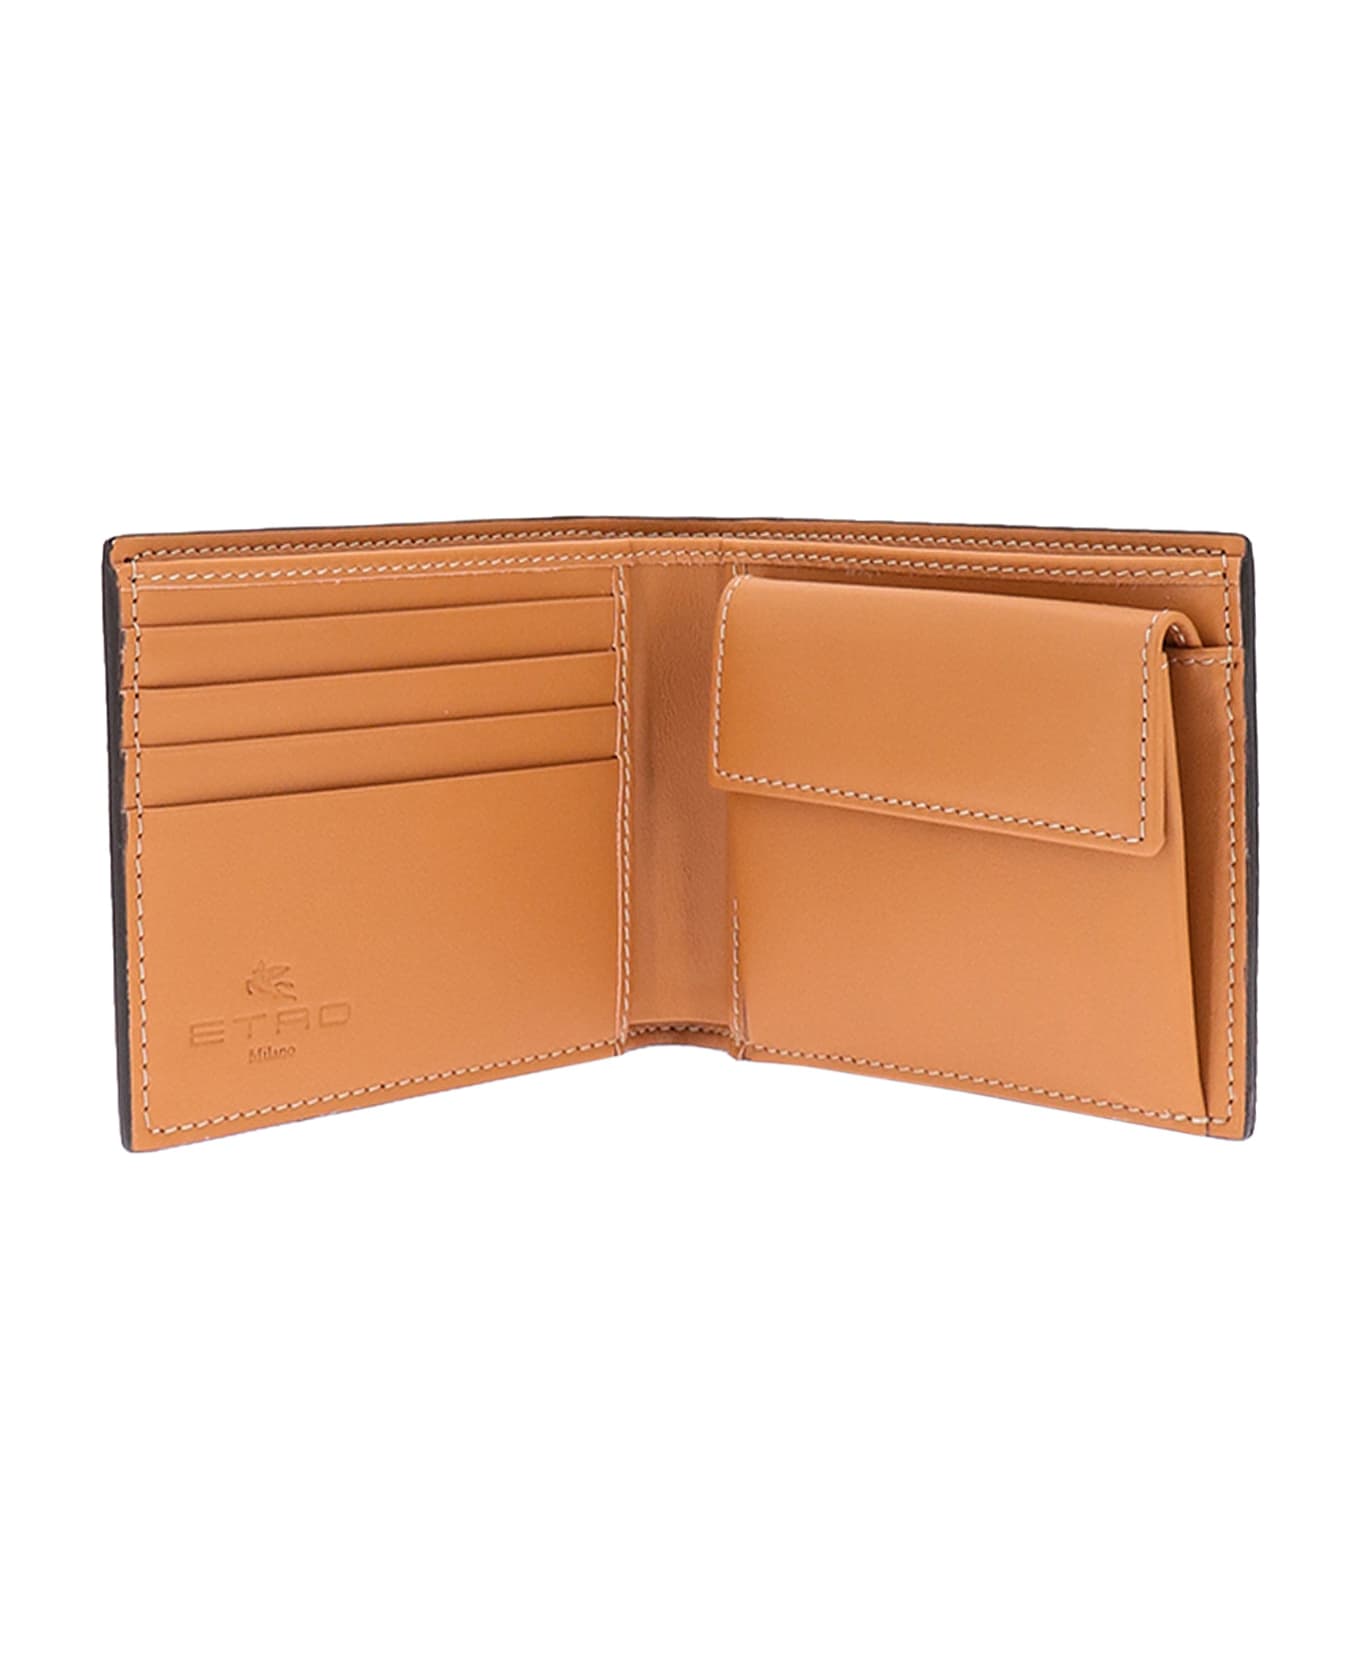 Etro Wallet - Multicolor 財布